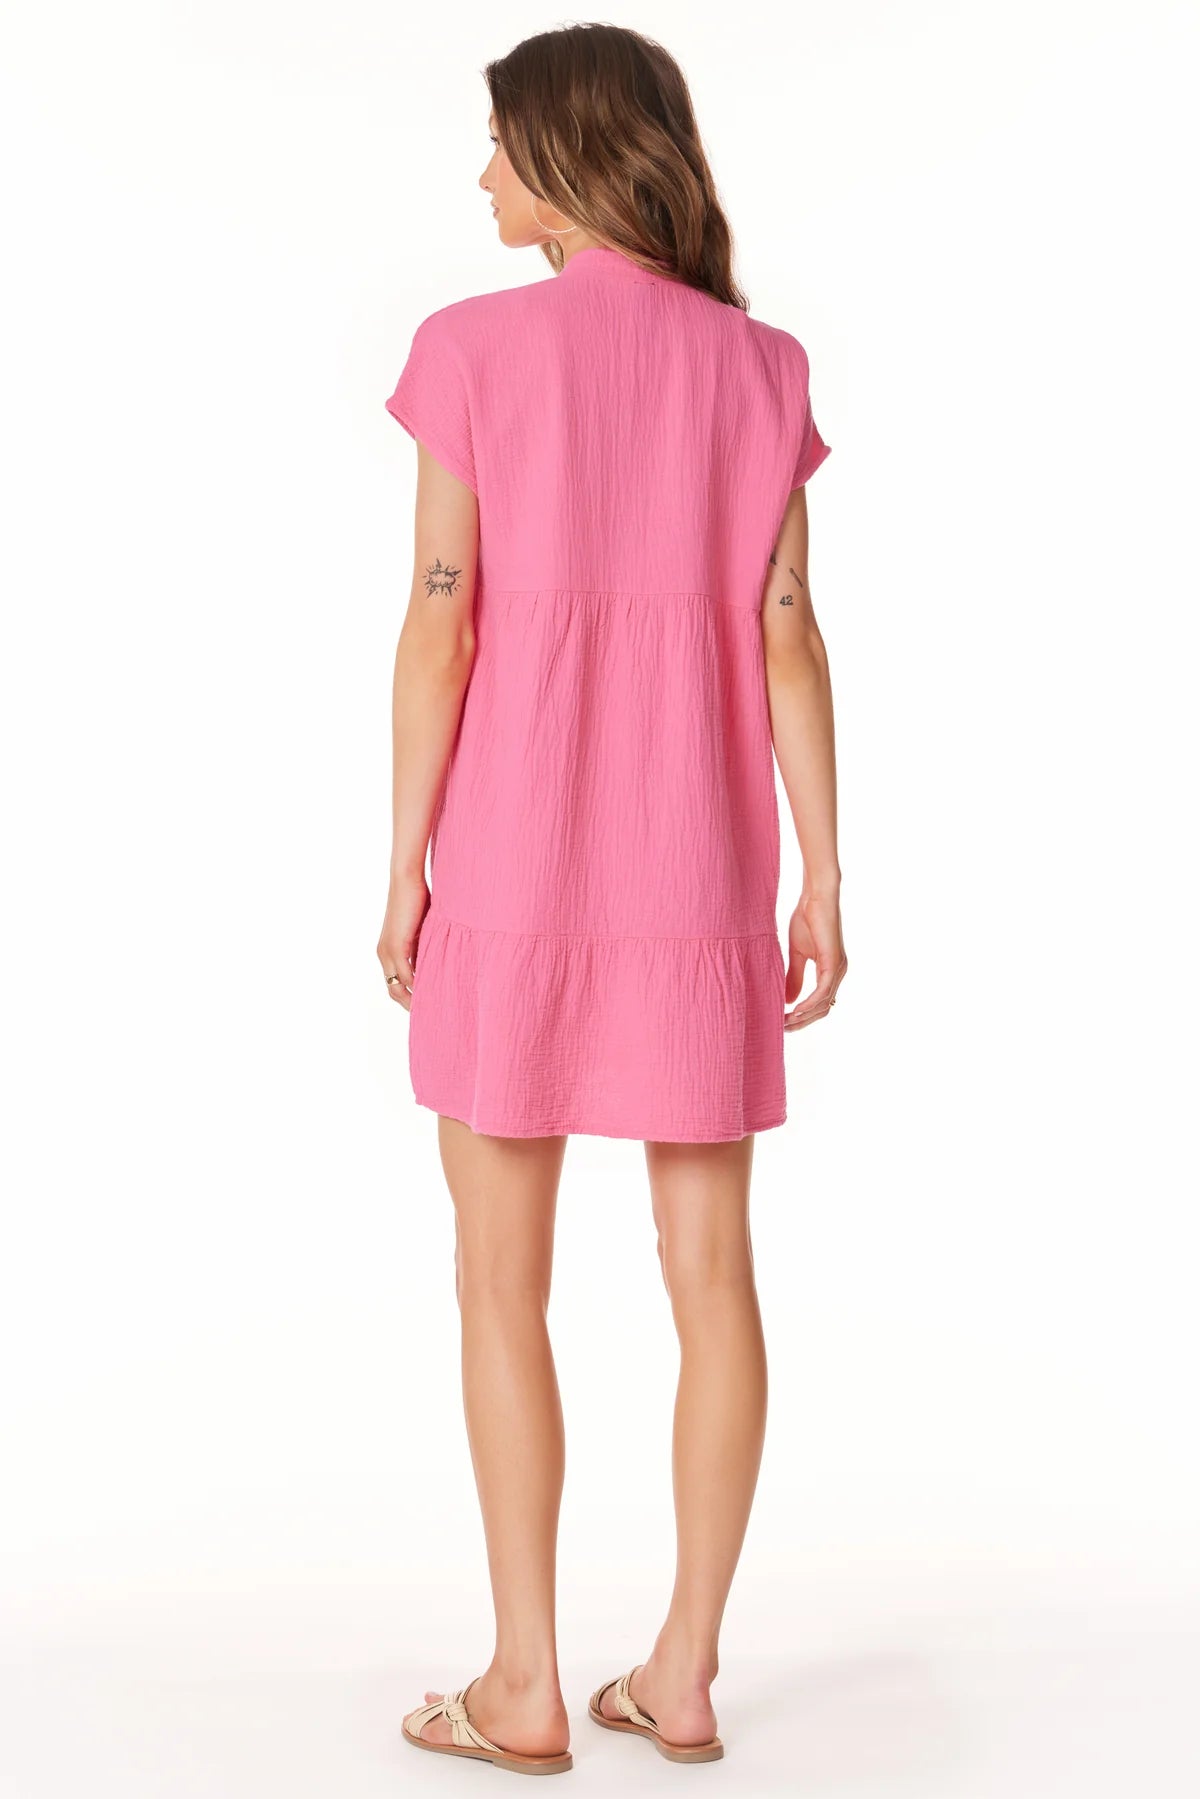 Bobi -Tiered V Neck S/S Dress - Tropical Pink